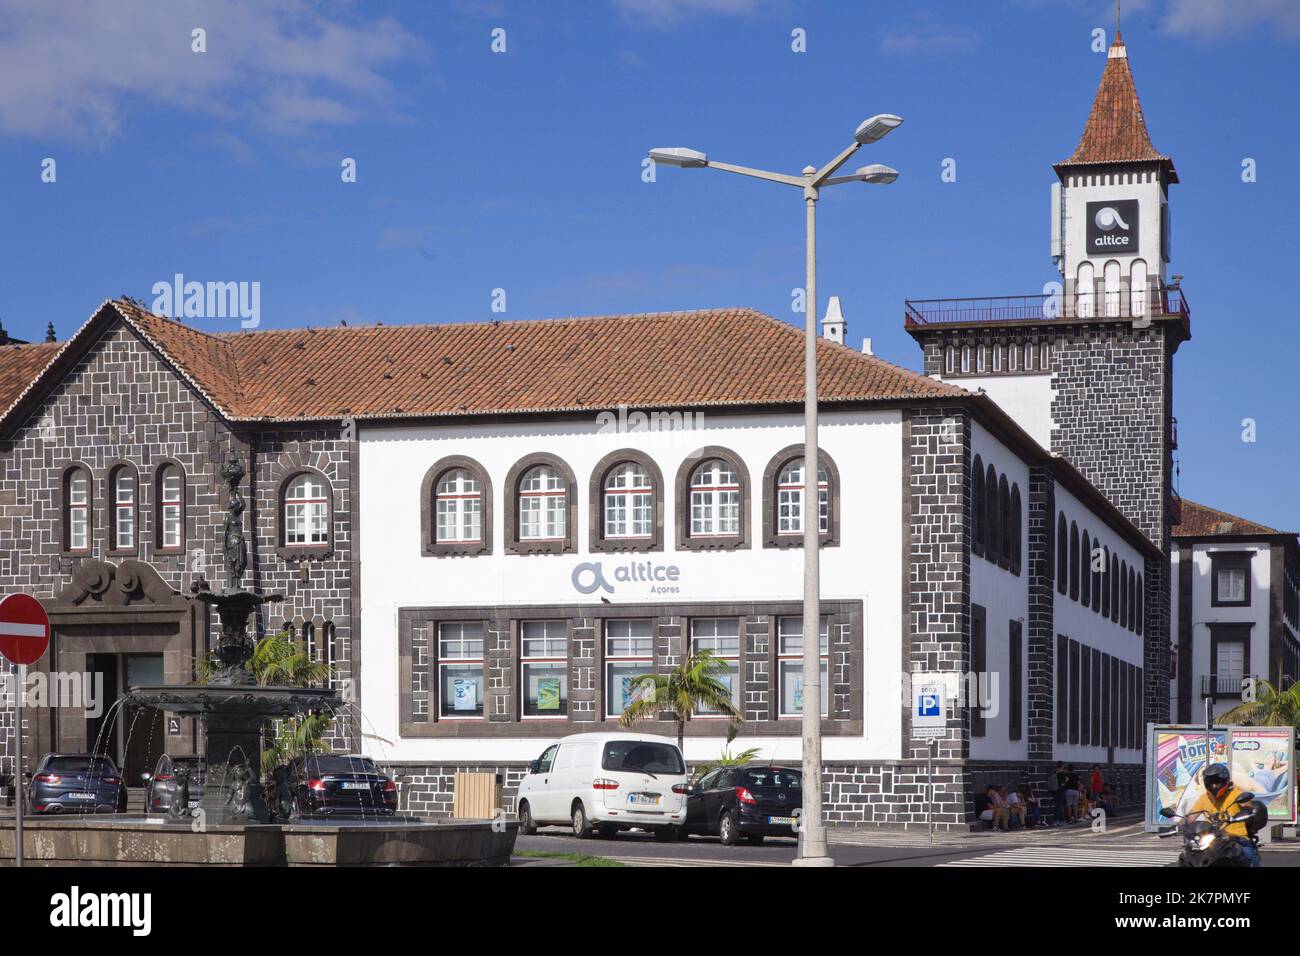 Portugal, Azores, Sao Miguel Island, Ponta Delgada, Altice Building, Stock Photo